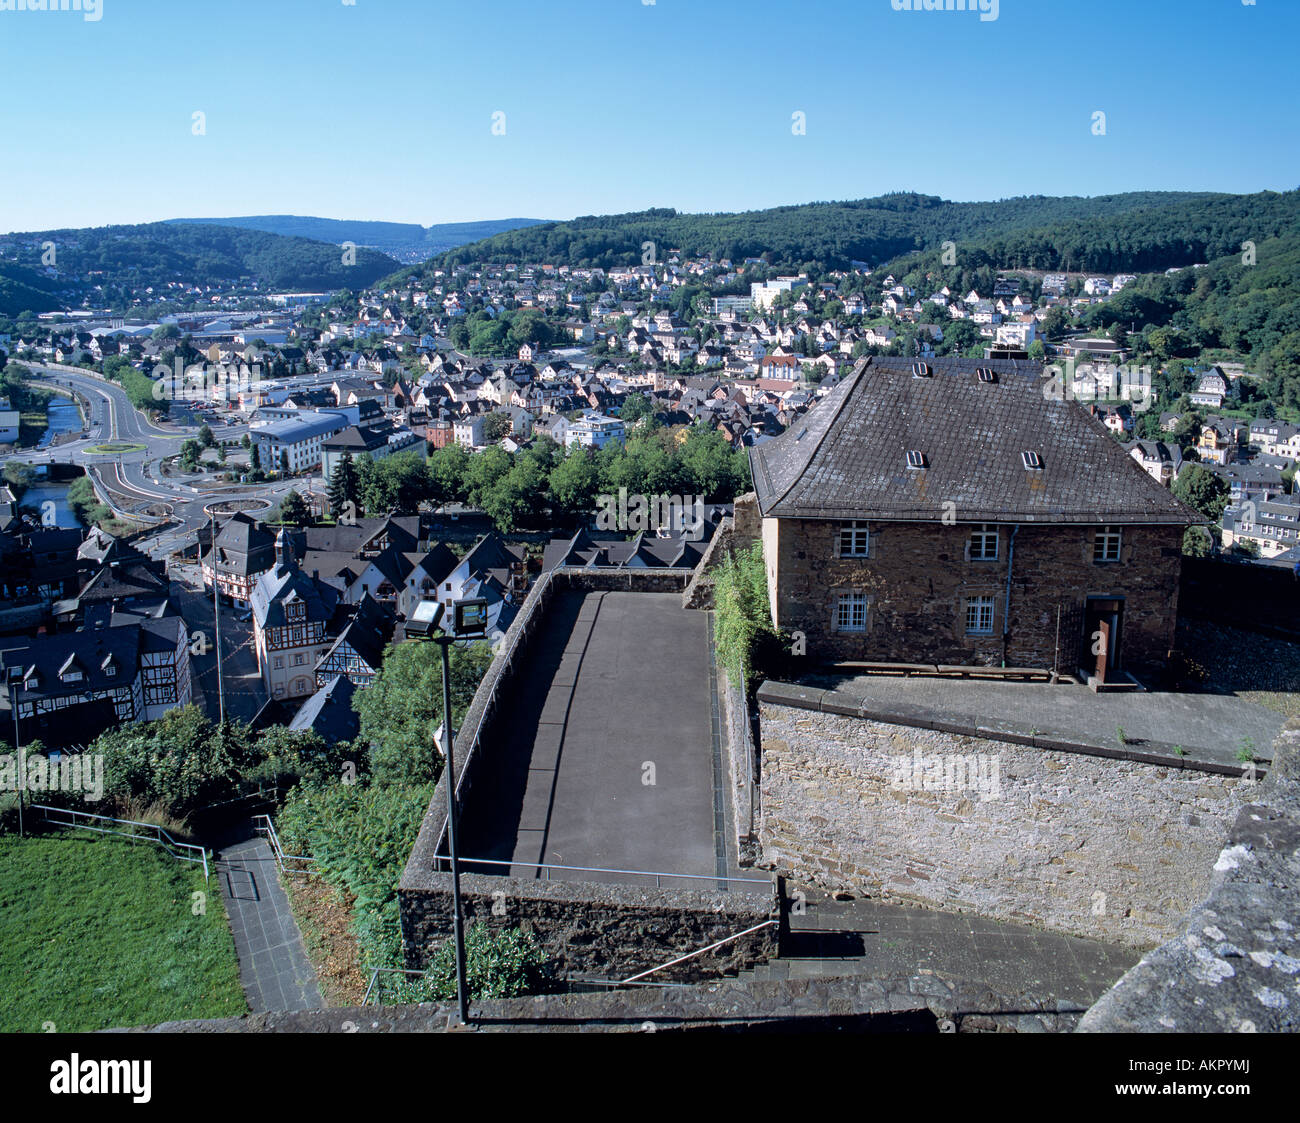 Stadtpanorama von Dillenburg in Hessen, Stockhaus, ehemaliges Gefaengnis, Teil der Befestigungsanlage auf dem Schlossberg Foto Stock